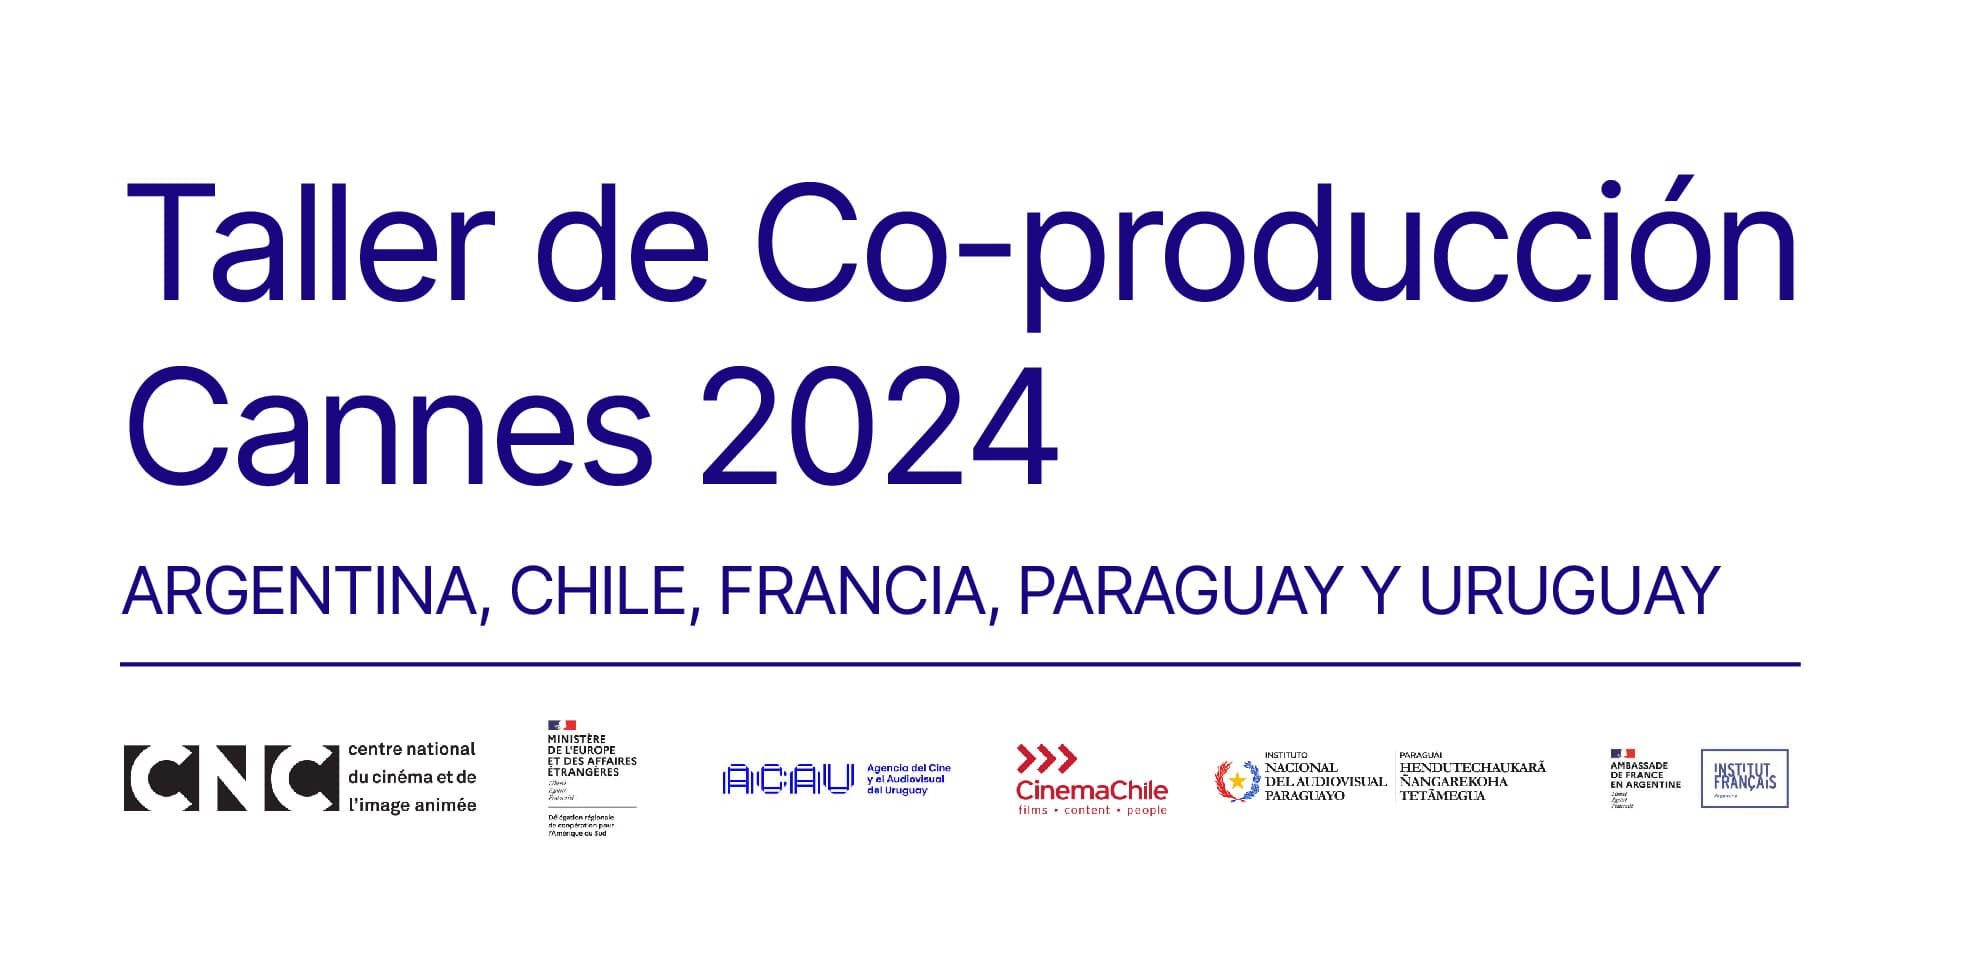 TALLER DE CO-PRODUCCION CANNES 2024 ARGENTINA, CHILE, FRANCIA, PARAGUAY Y URUGUAY